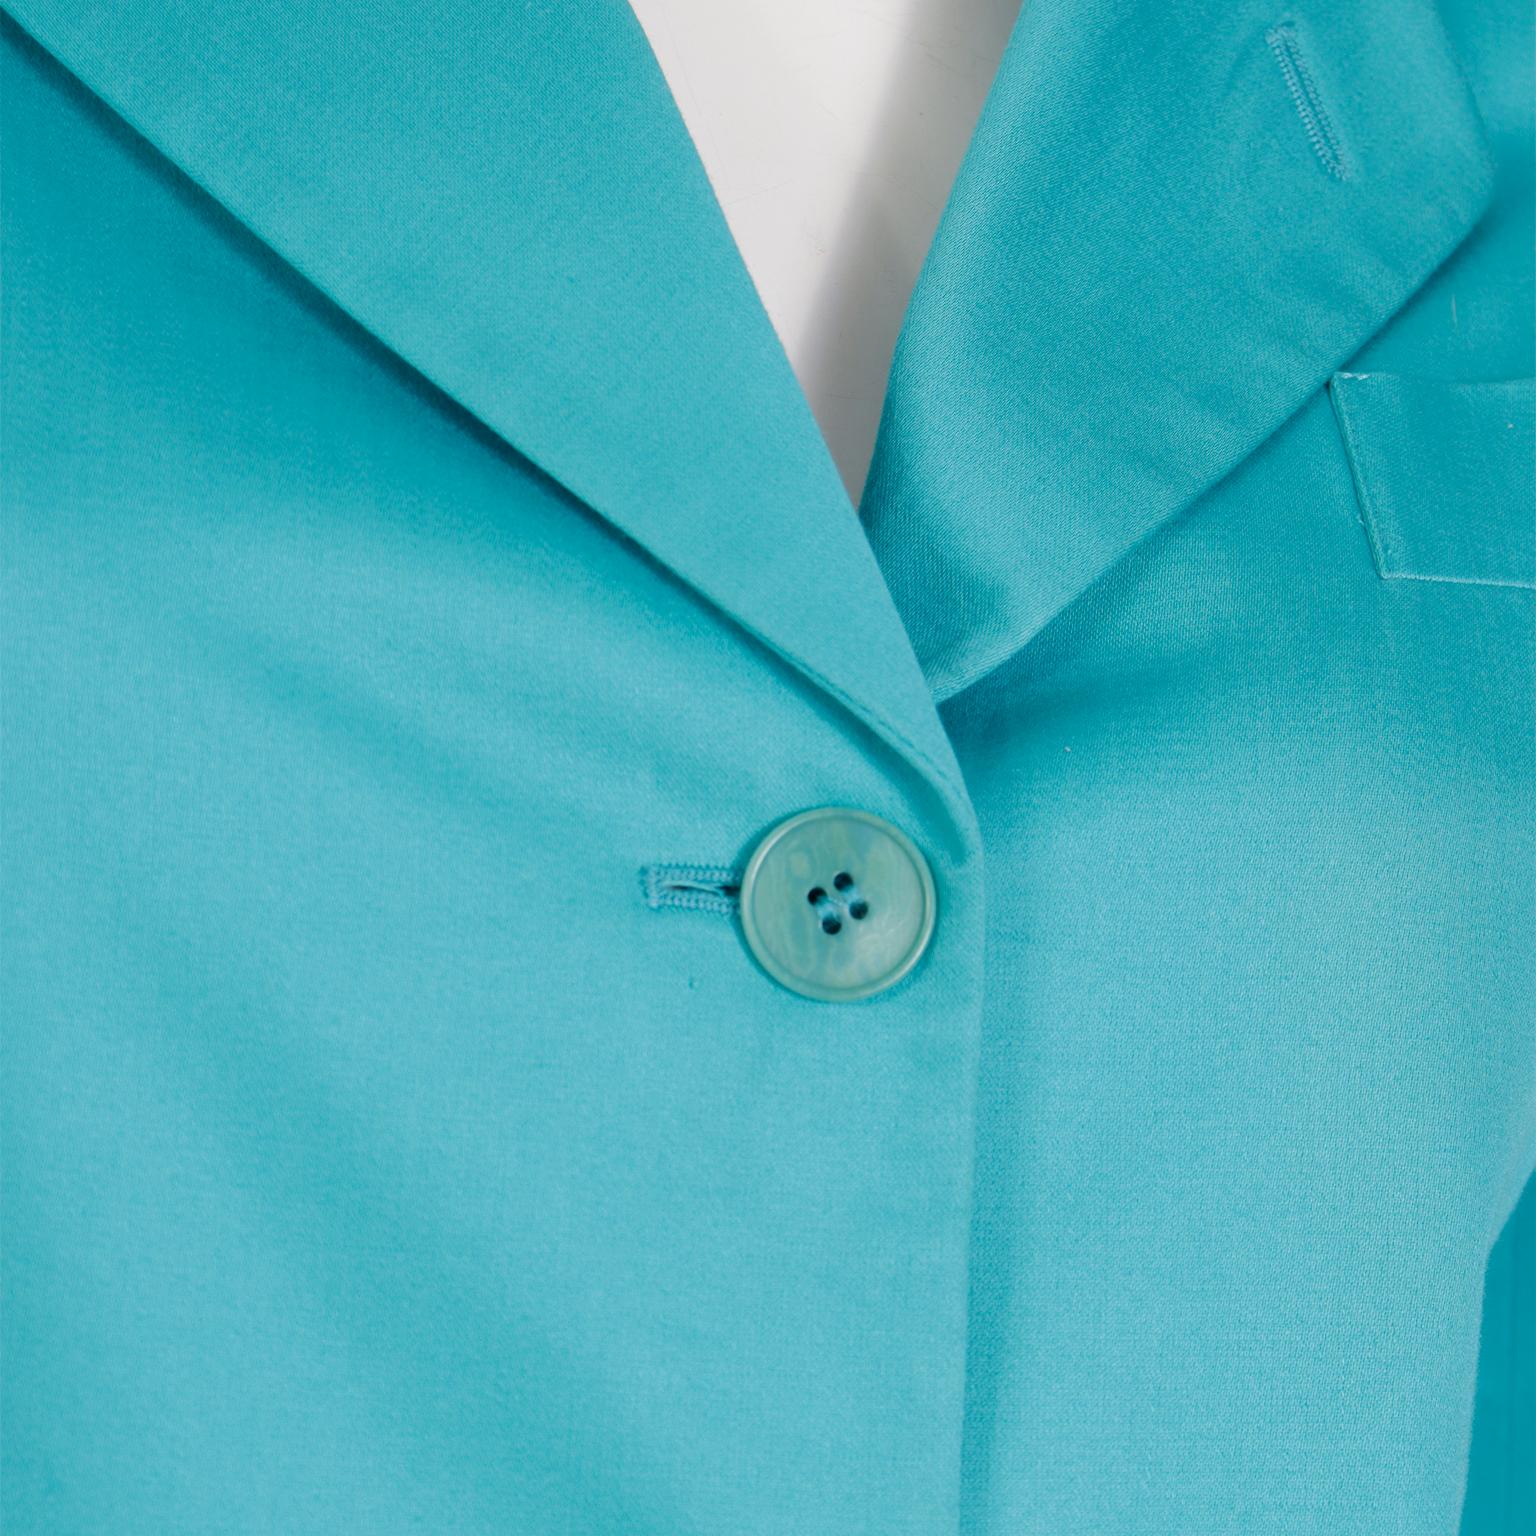 Giorgio Armani Le Collezioni Aqua Blue Women's Longline Blazer Jacket 3